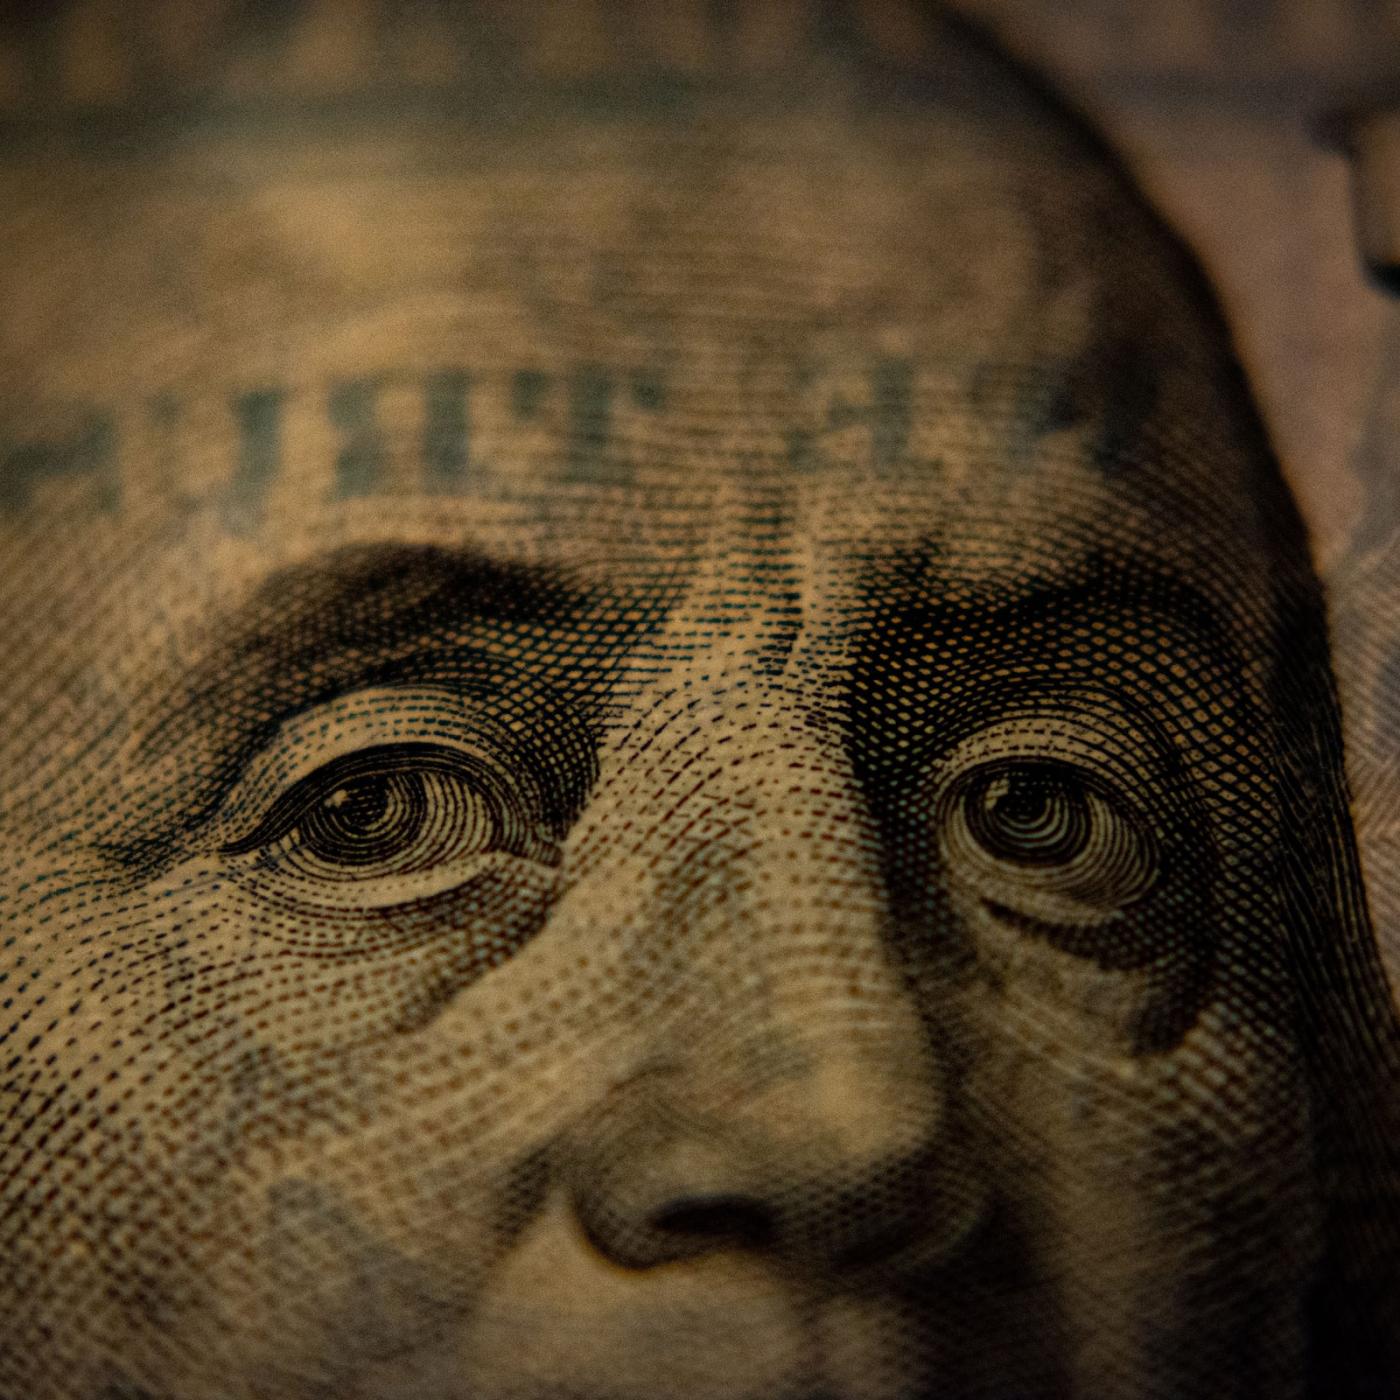 Benjamin Franklin currency image by Adam Nir via Unsplash